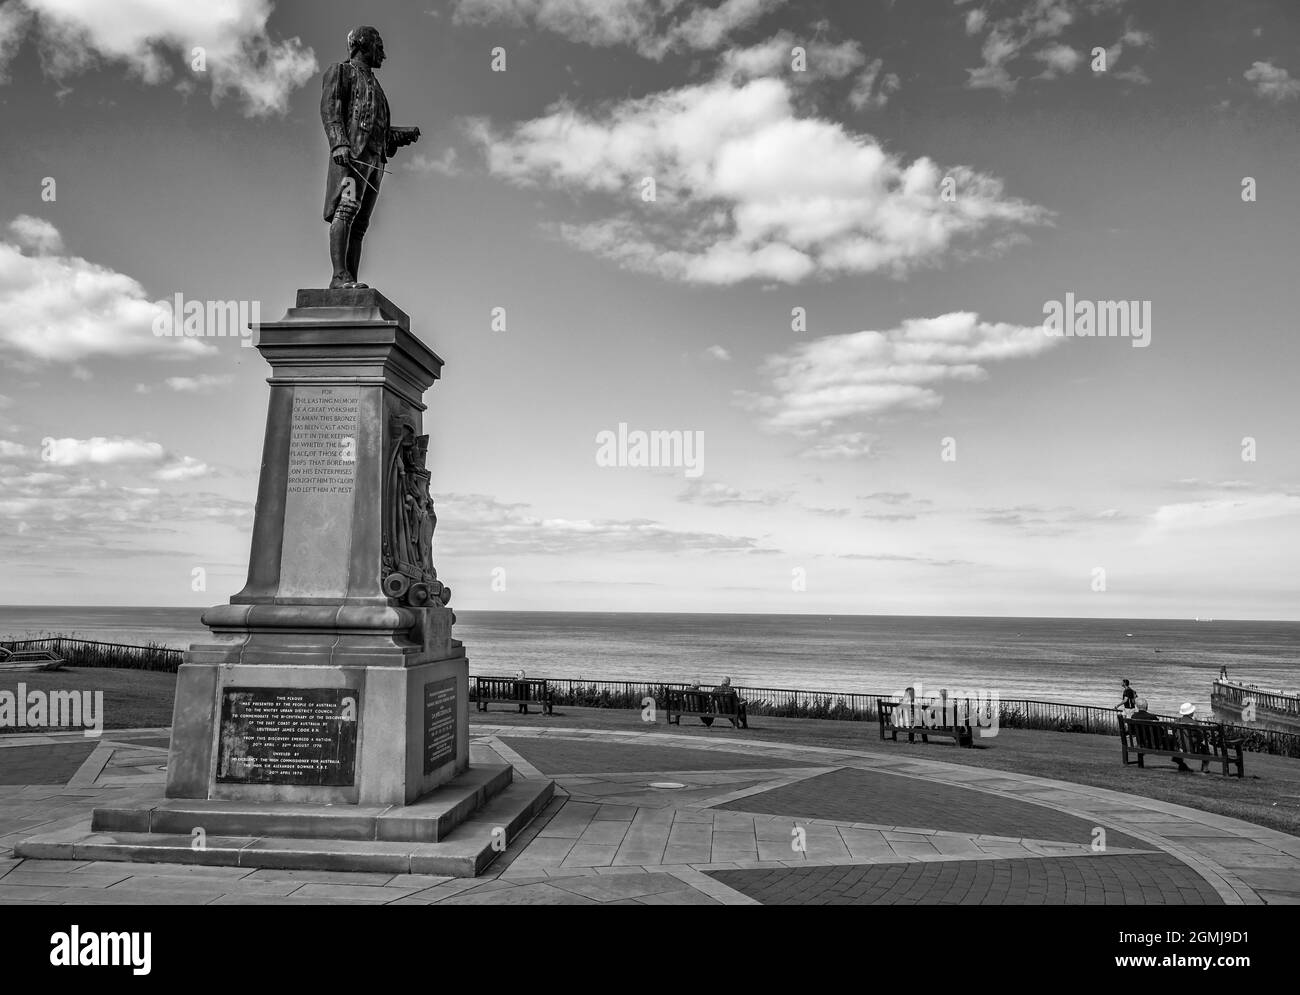 Statue commémorative au capitaine James Cook, explorateur de la Marine royale du XVIe siècle, surplombant le port de Whitby, qui explorait les Amériques, l'Australie, la Nouvelle-Zélande Banque D'Images